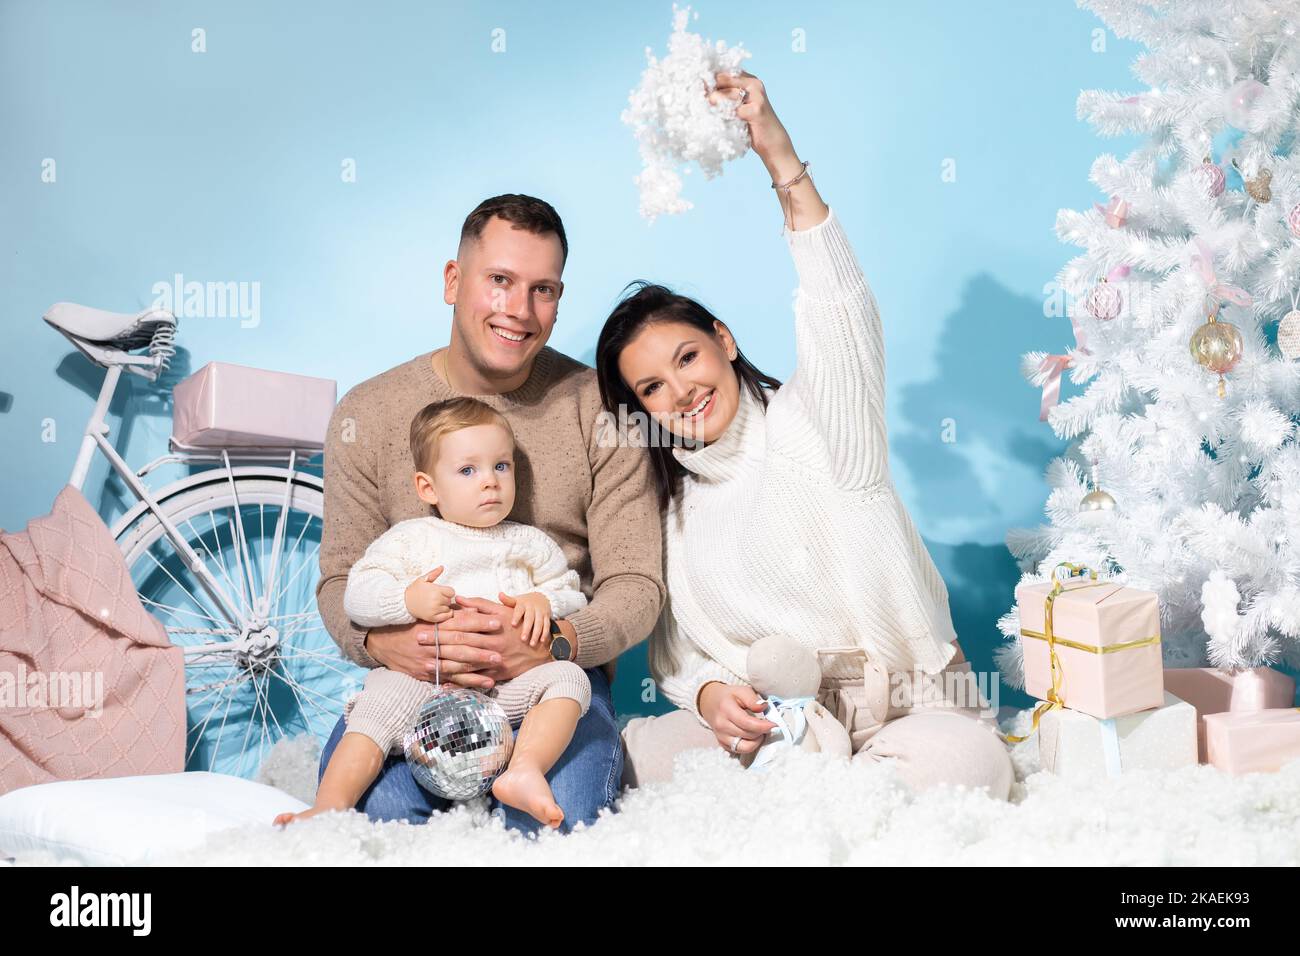 Familienportrait von drei Personen, die zusammen in einem weihnachtlichen Drehort mit weißen Dekorationen auf blauem Hintergrund sitzen. Fröhliche Mutter, Vater und Stockfoto